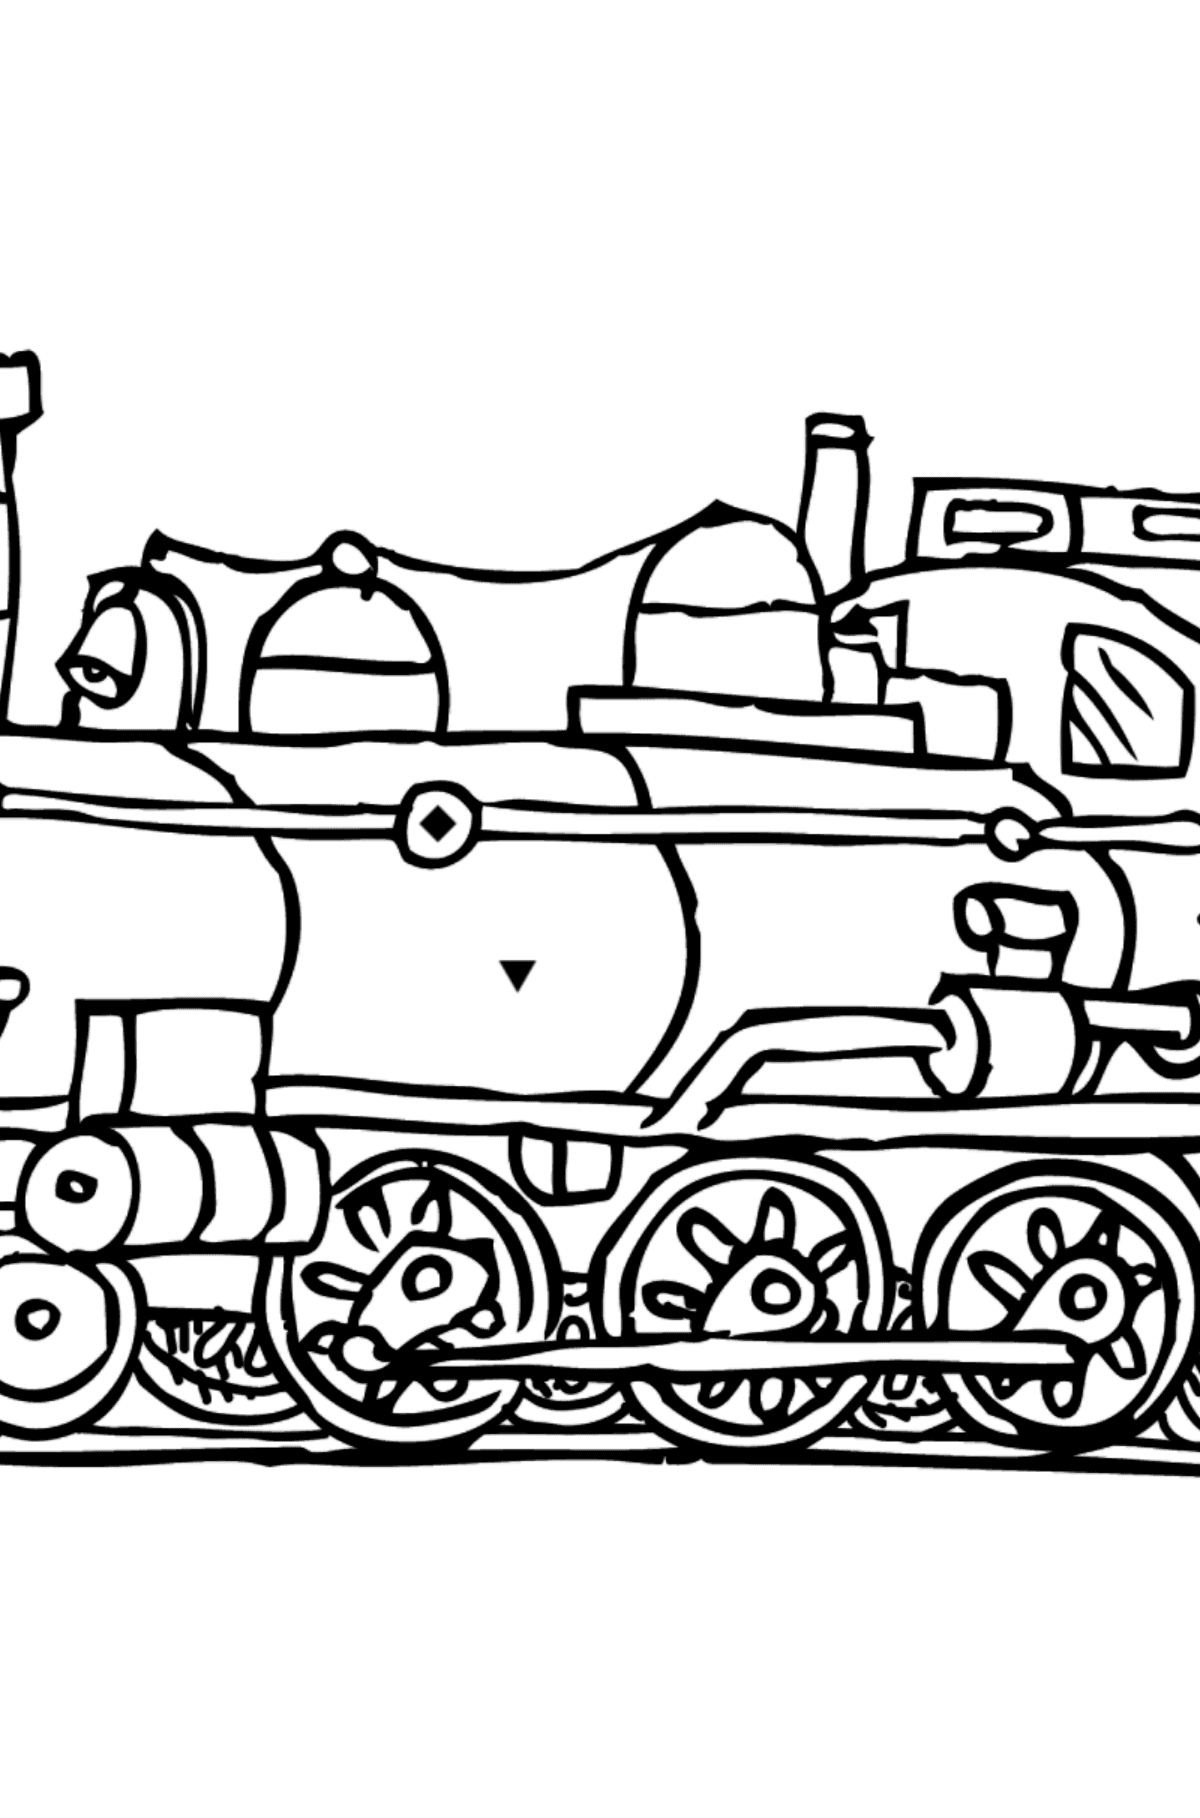 Tegning til fargelegging lokomotiv - Fargelegge etter symboler og geometriske former for barn